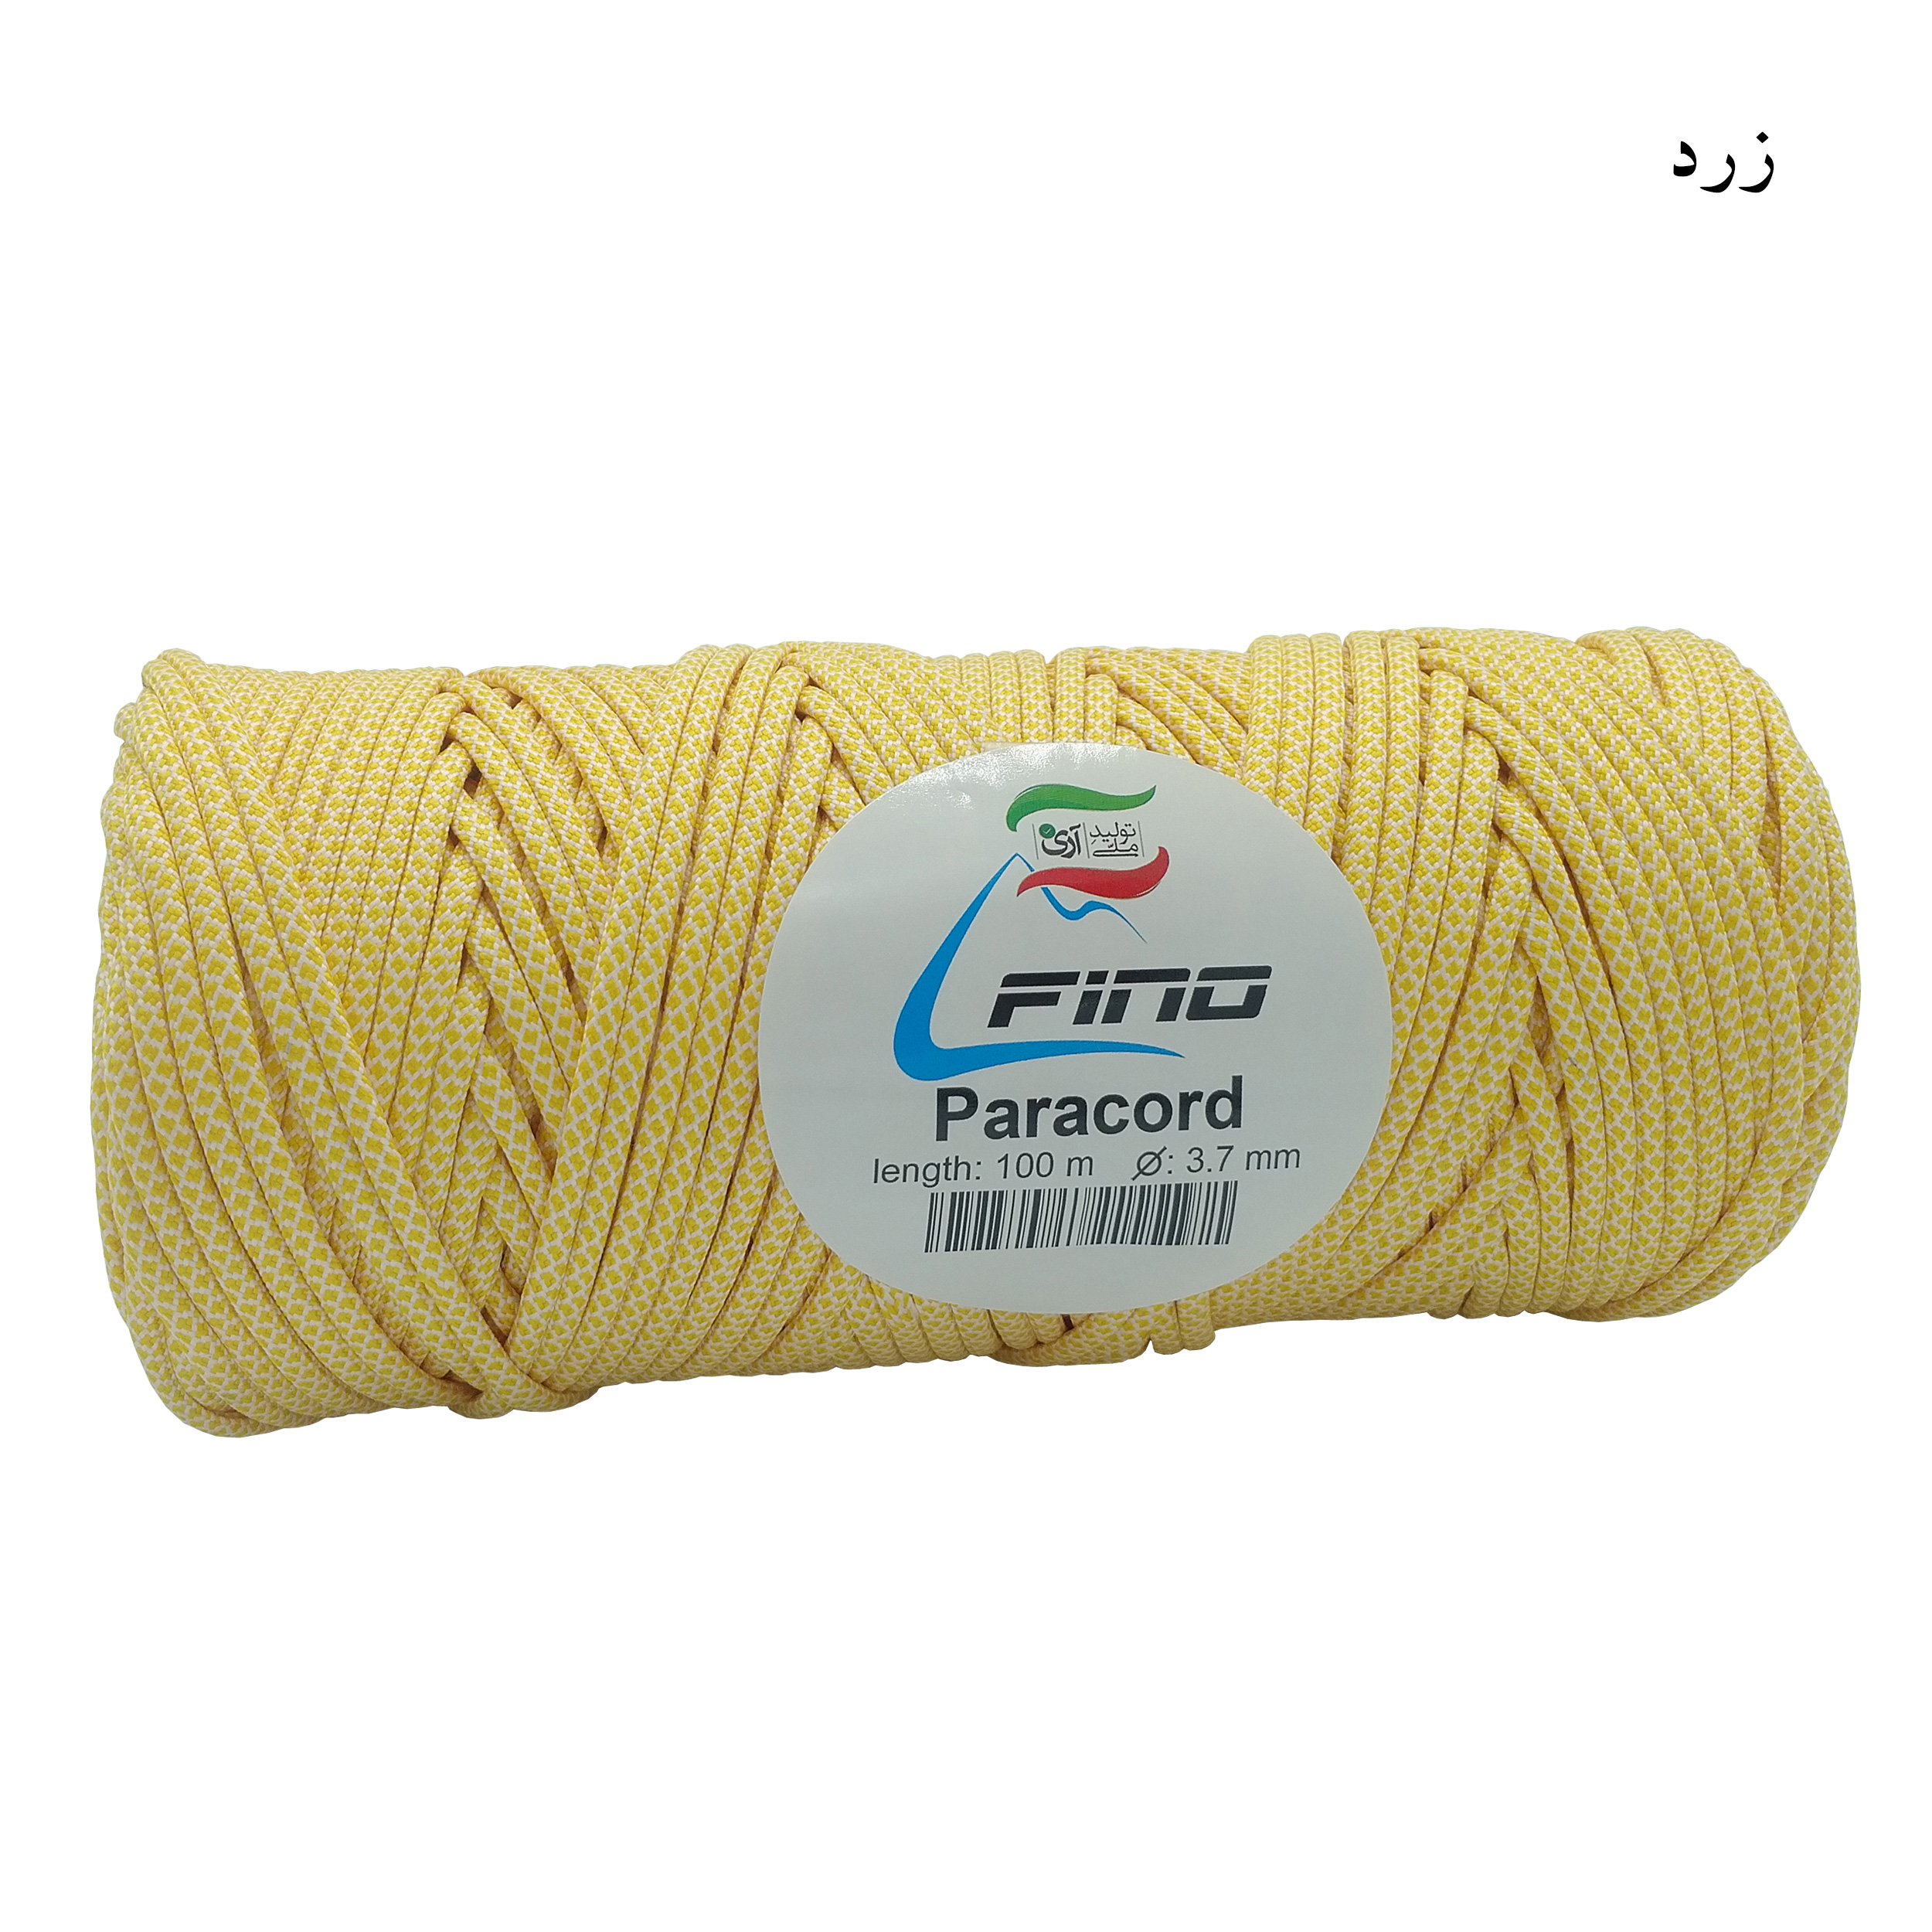  طناب پاراکورد 100 متری فینو مدل BEO-1